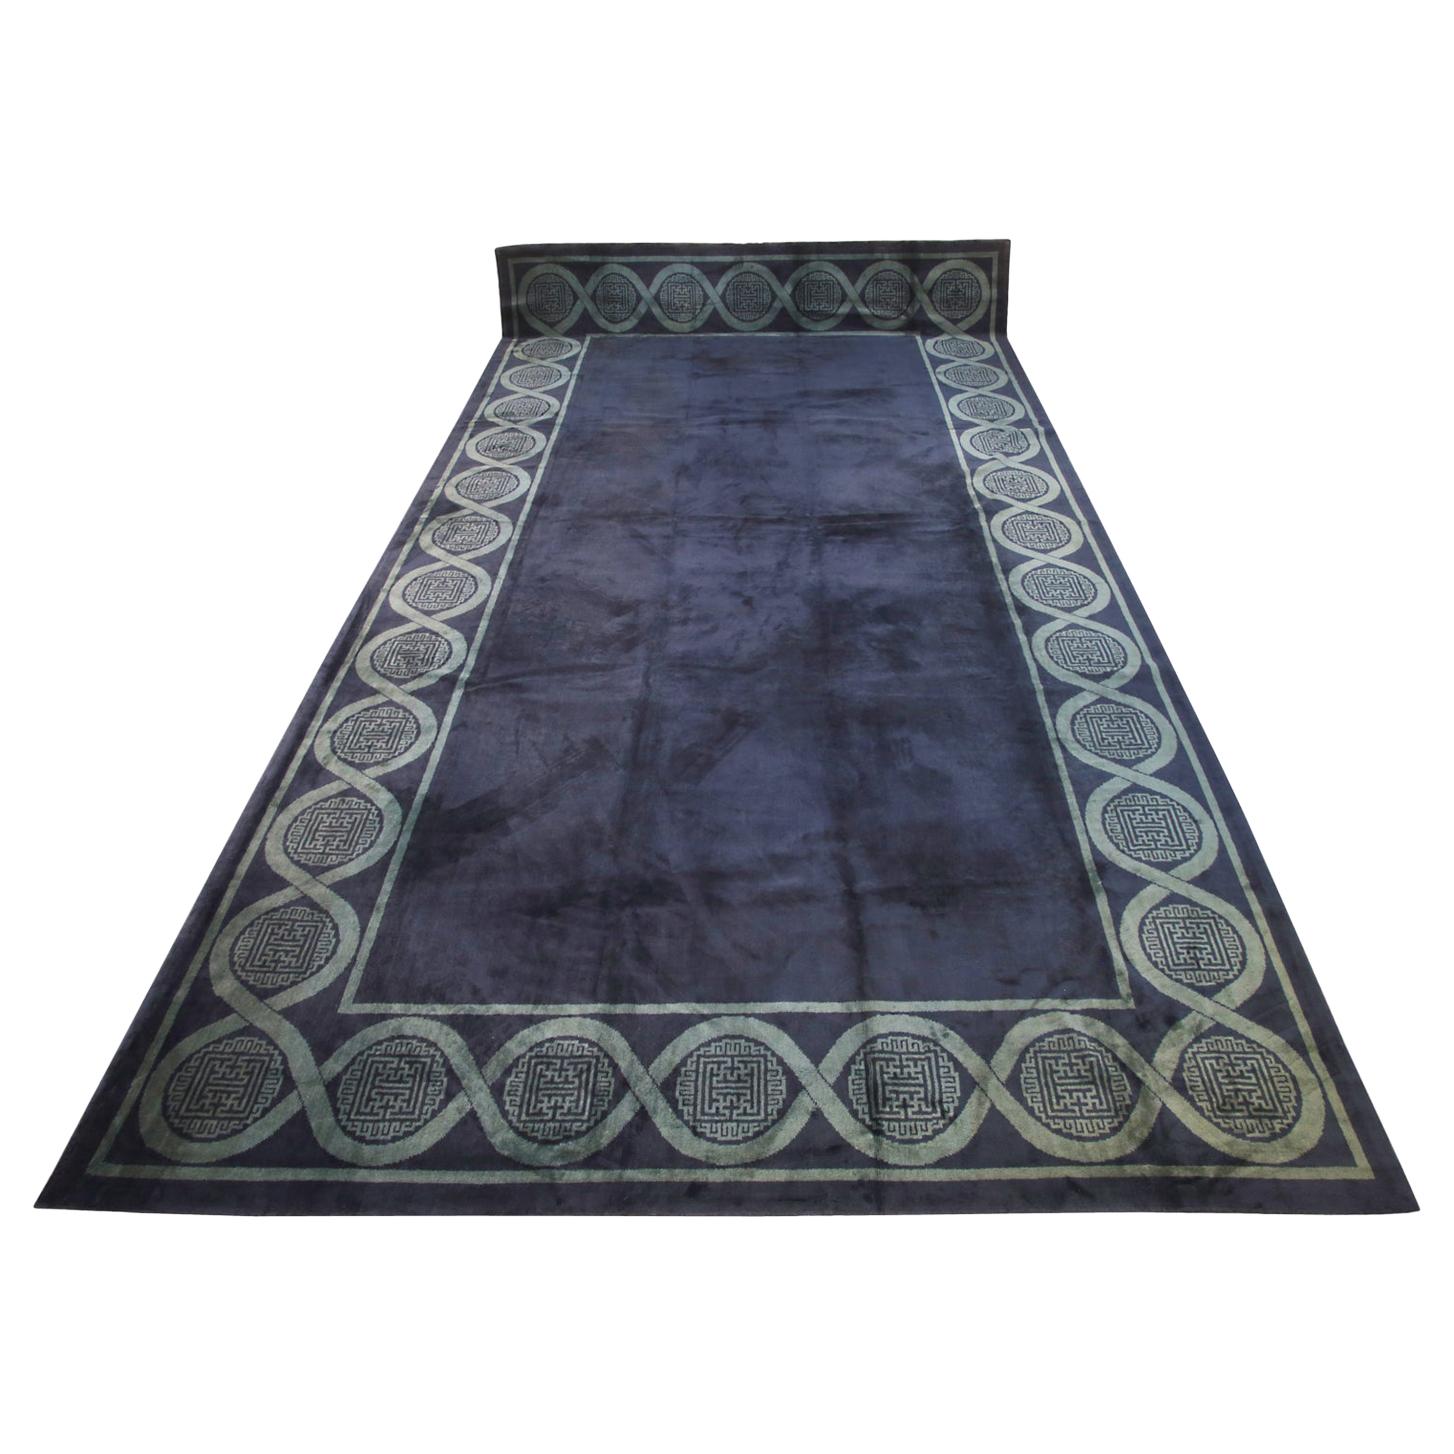 Spanischer Teppich im minimalistischen Design in Mitternachtsblau, 1920-1950